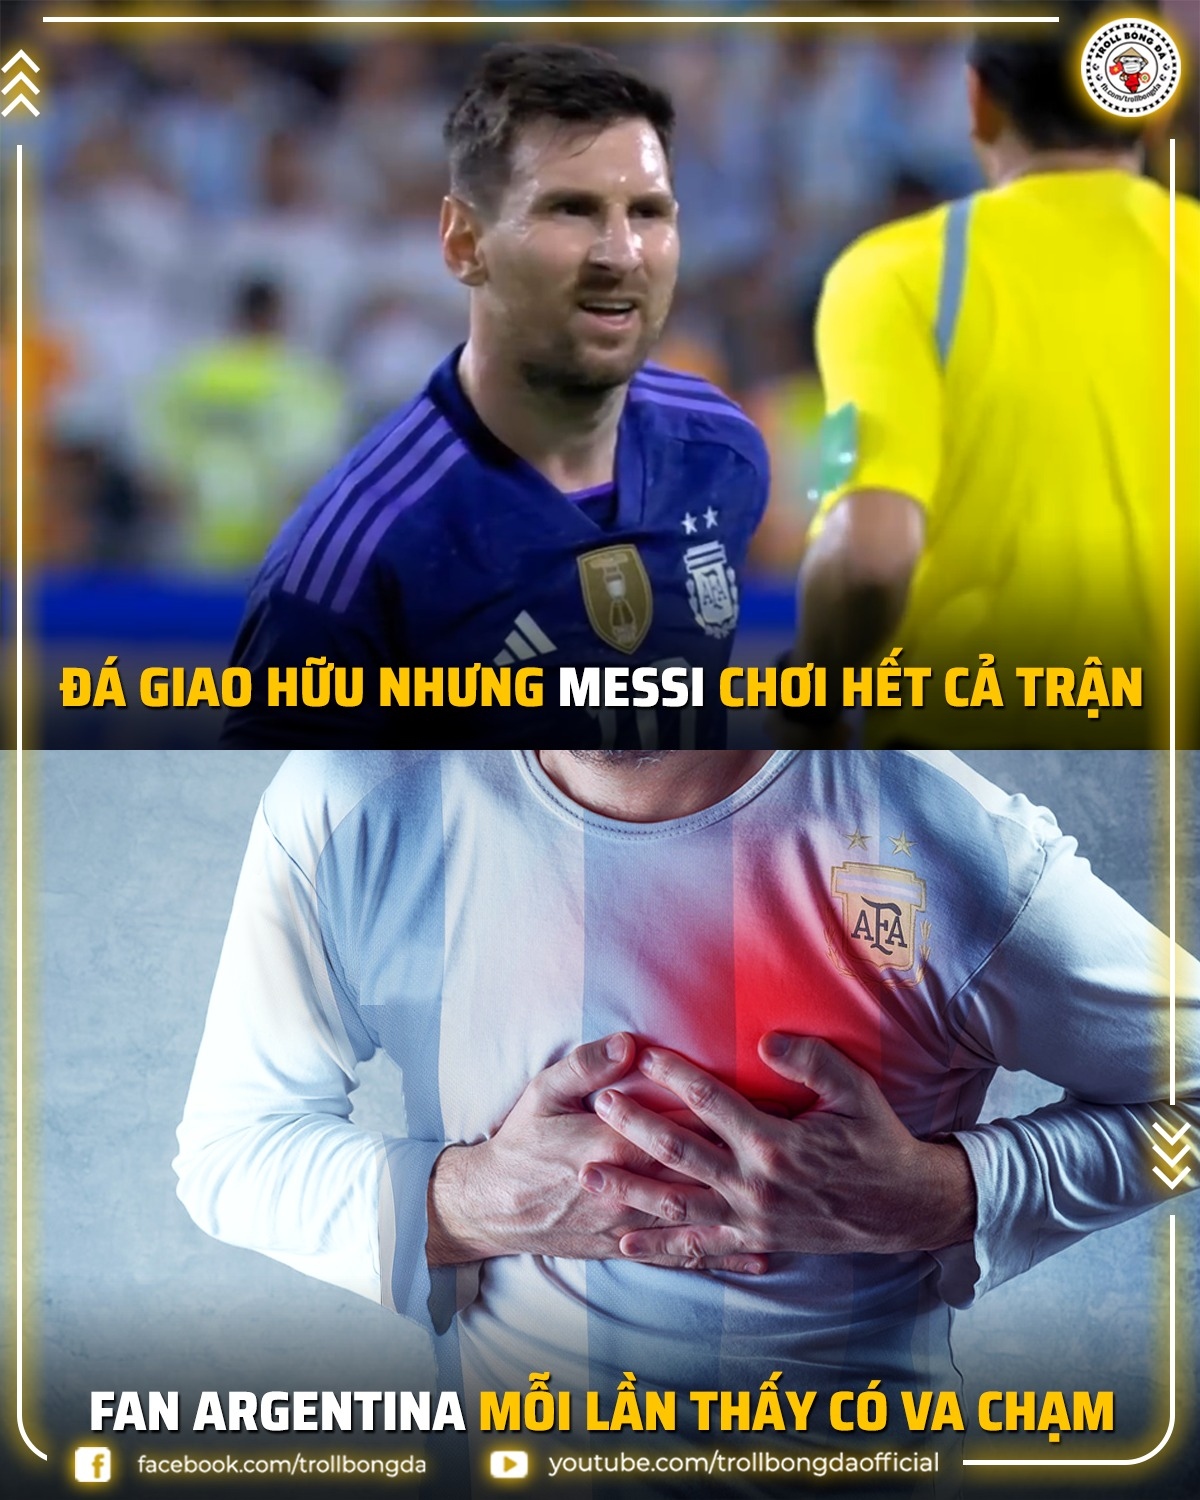 Biếm họa 24h: Messi sung sức trước thềm World Cup - Ảnh 1.